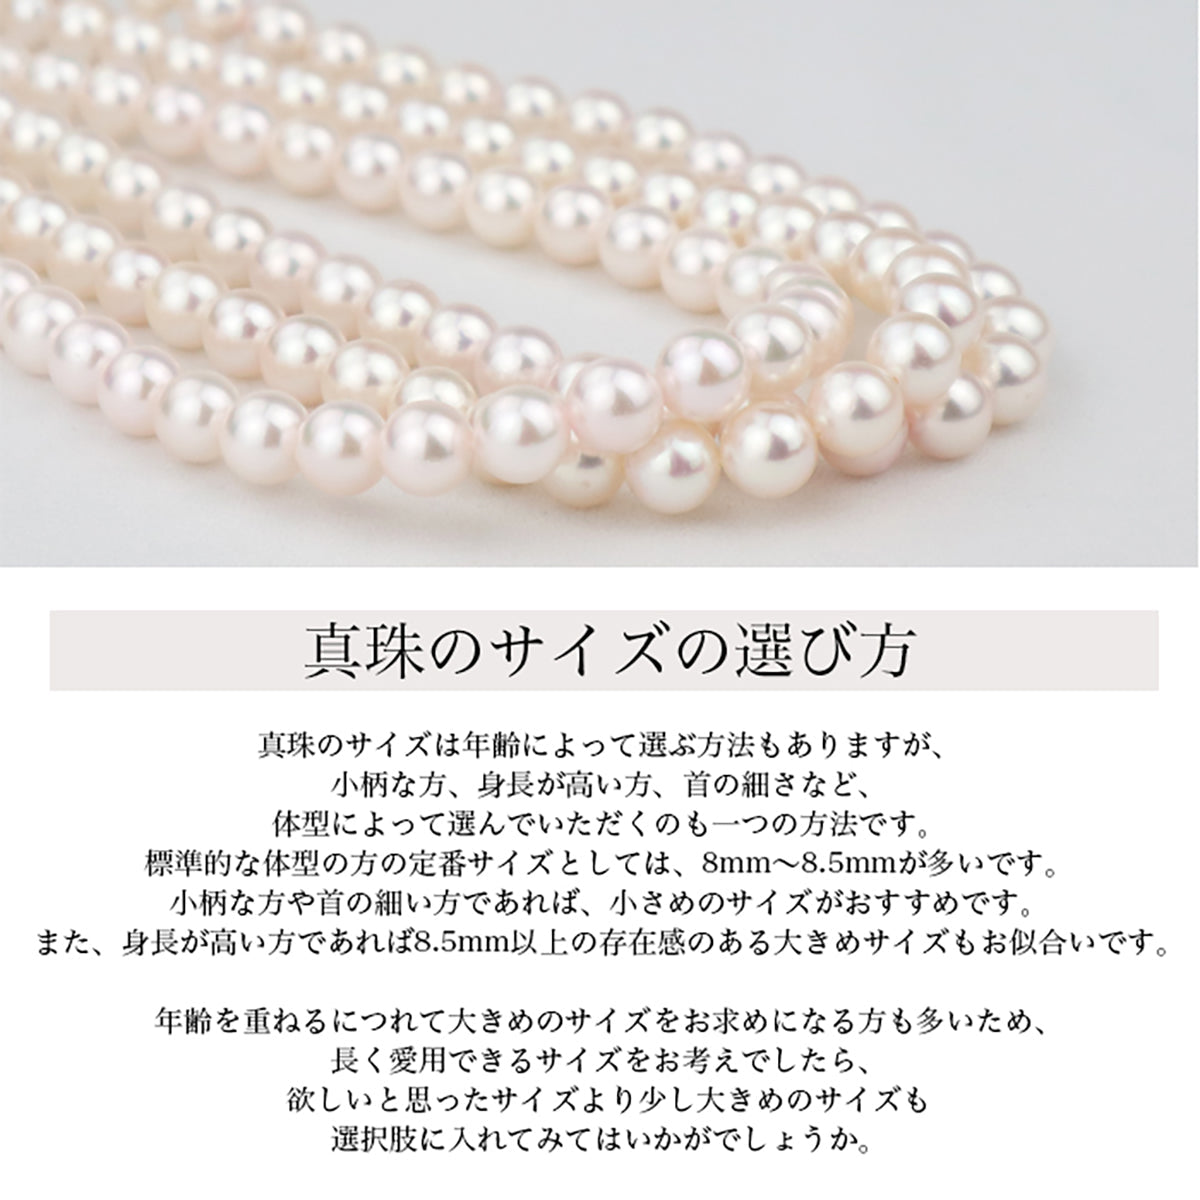 あこや真珠 フォーマルネックレス 2点セット【7.0-7.5mm】 (ピアス